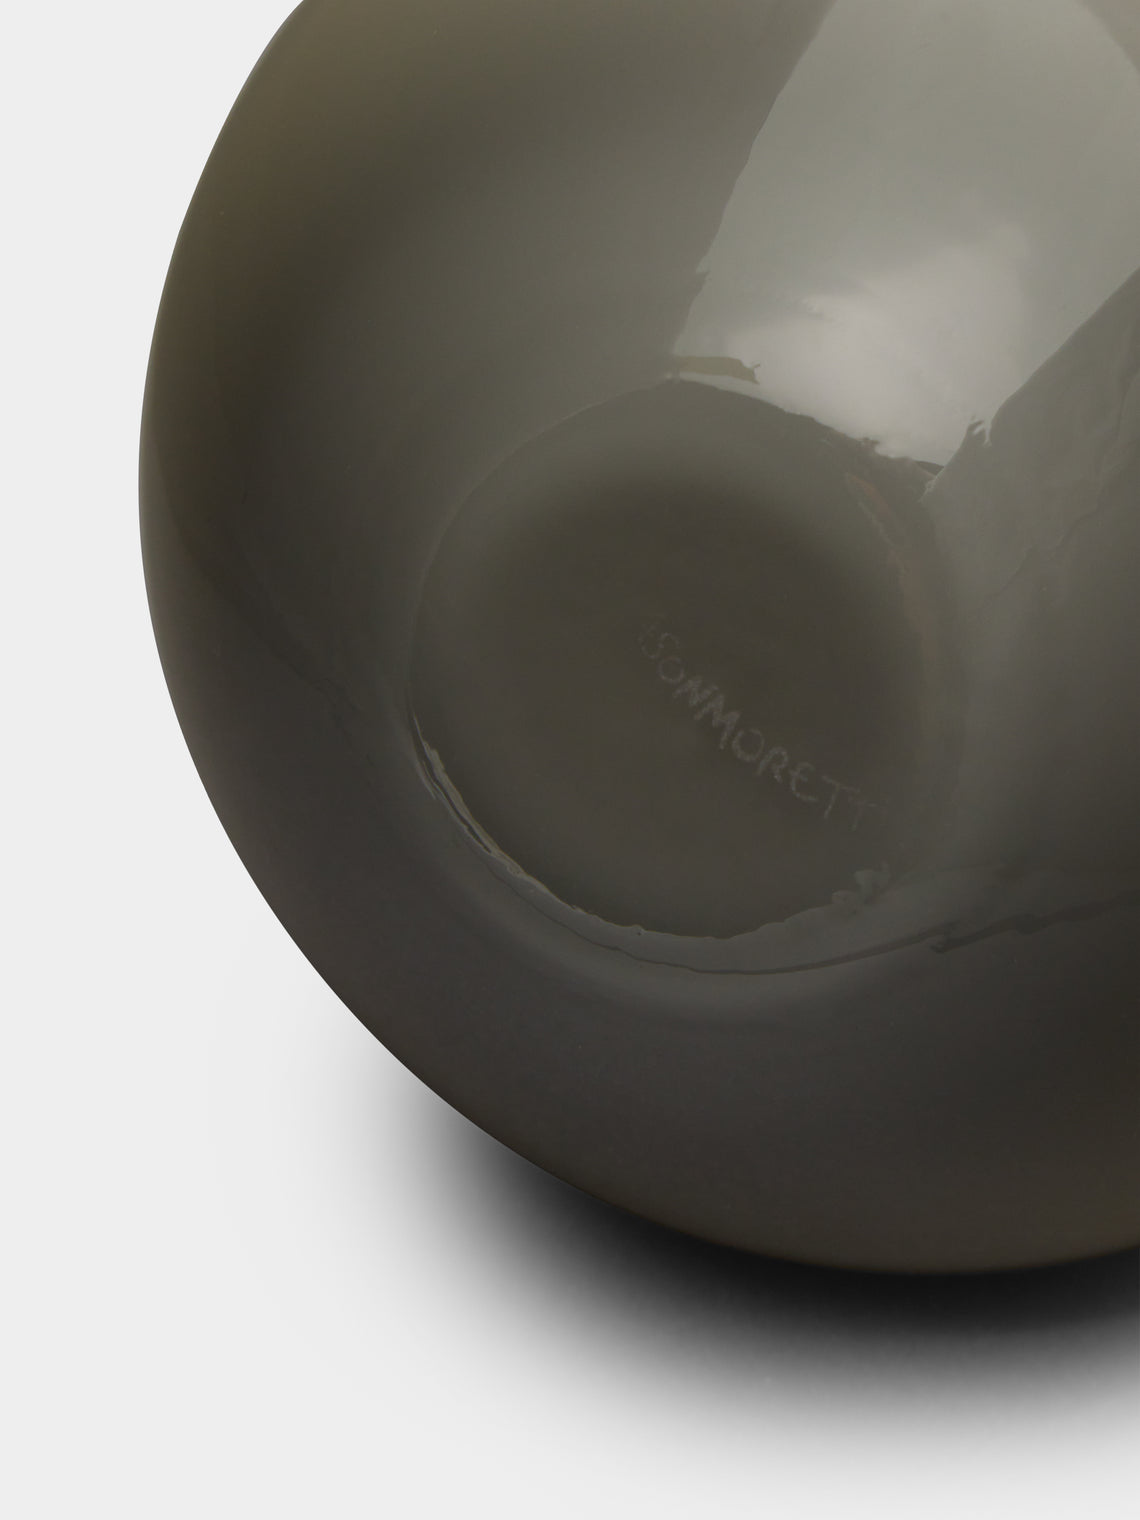 NasonMoretti - Antares Murano Glass Bud Vase -  - ABASK